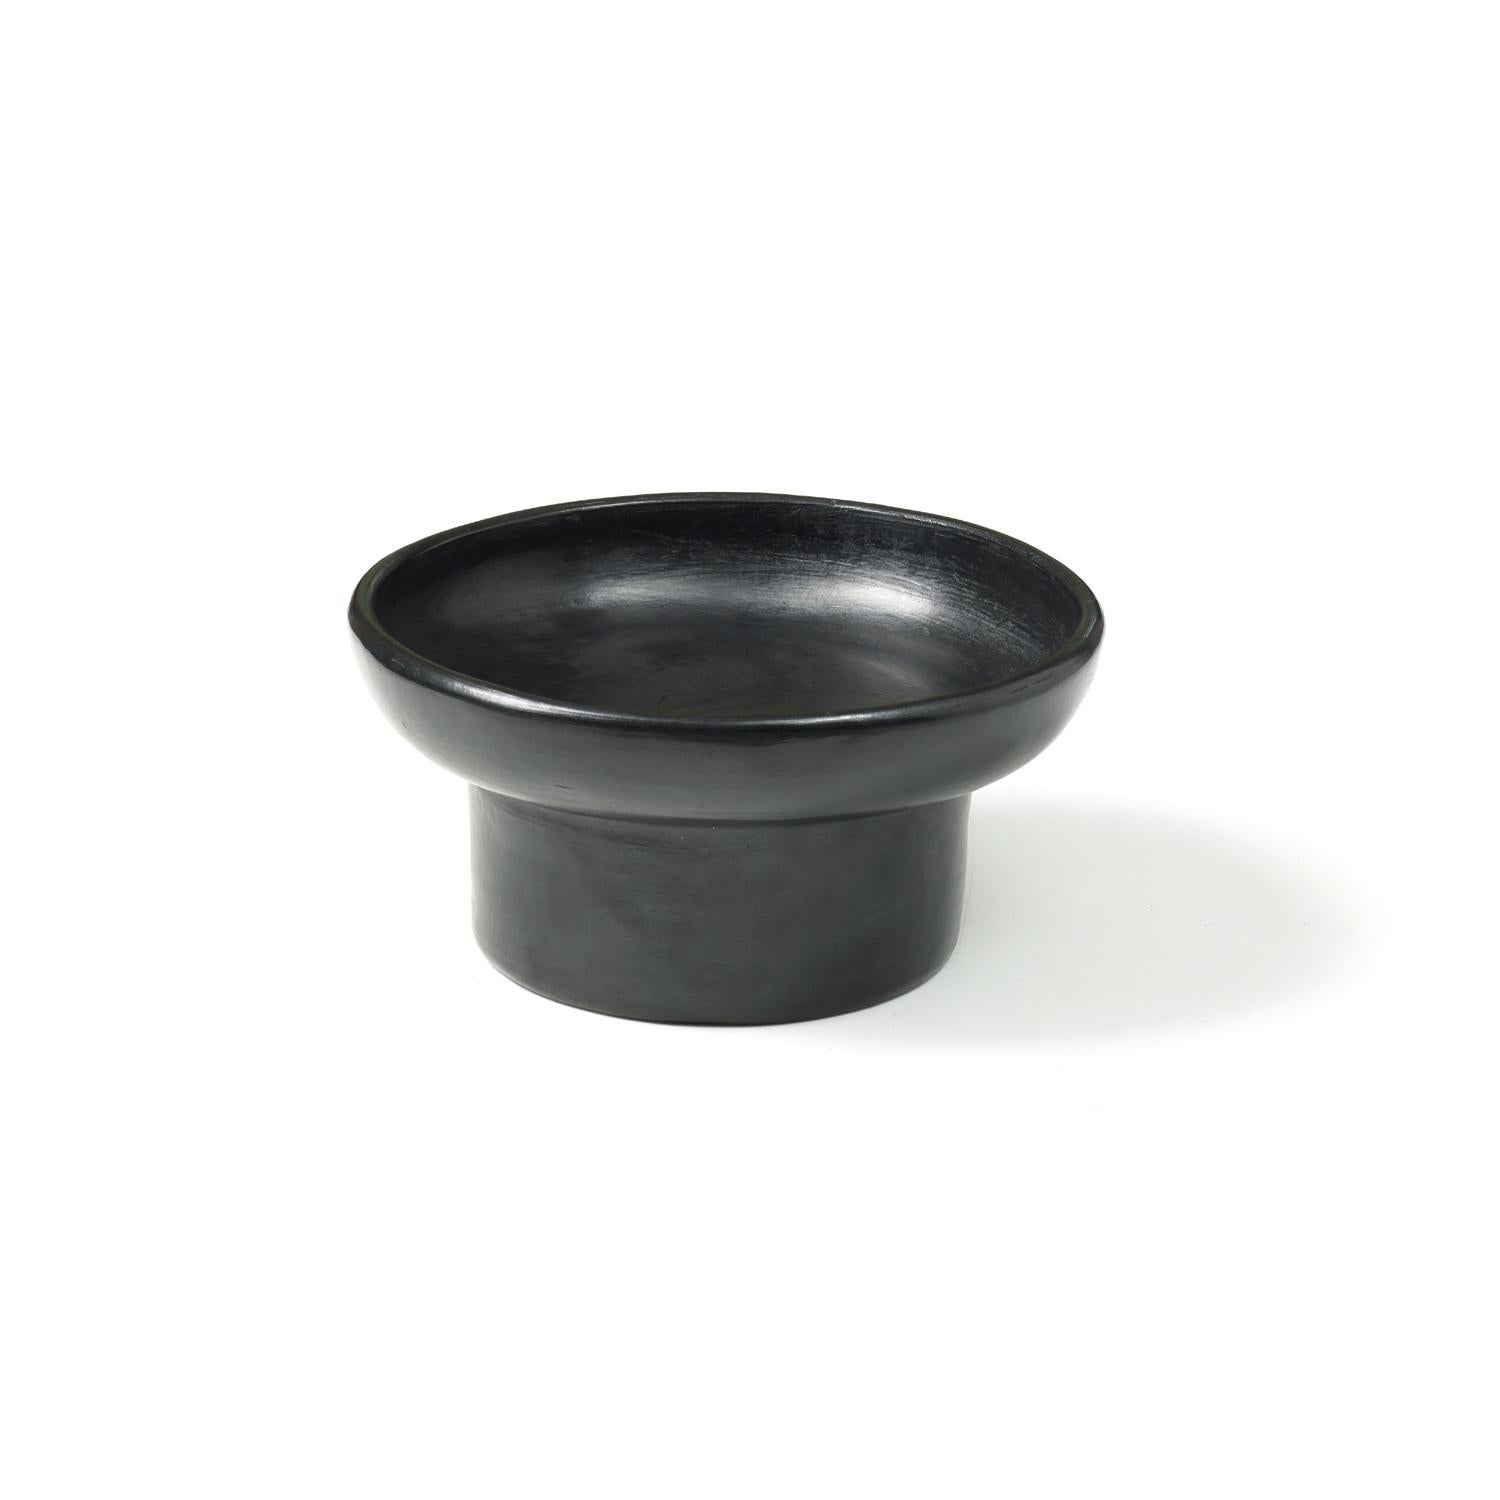 Mini-Tablett 2 von Sebastian Herkner
MATERIALIEN: Hitzebeständige schwarze Keramik. 
Technik: Glasiert. Im Ofen gegart und mit Halbedelsteinen poliert. 
Abmessungen: Durchmesser 25 cm x Höhe 9 cm 
Erhältlich in den Größen groß und